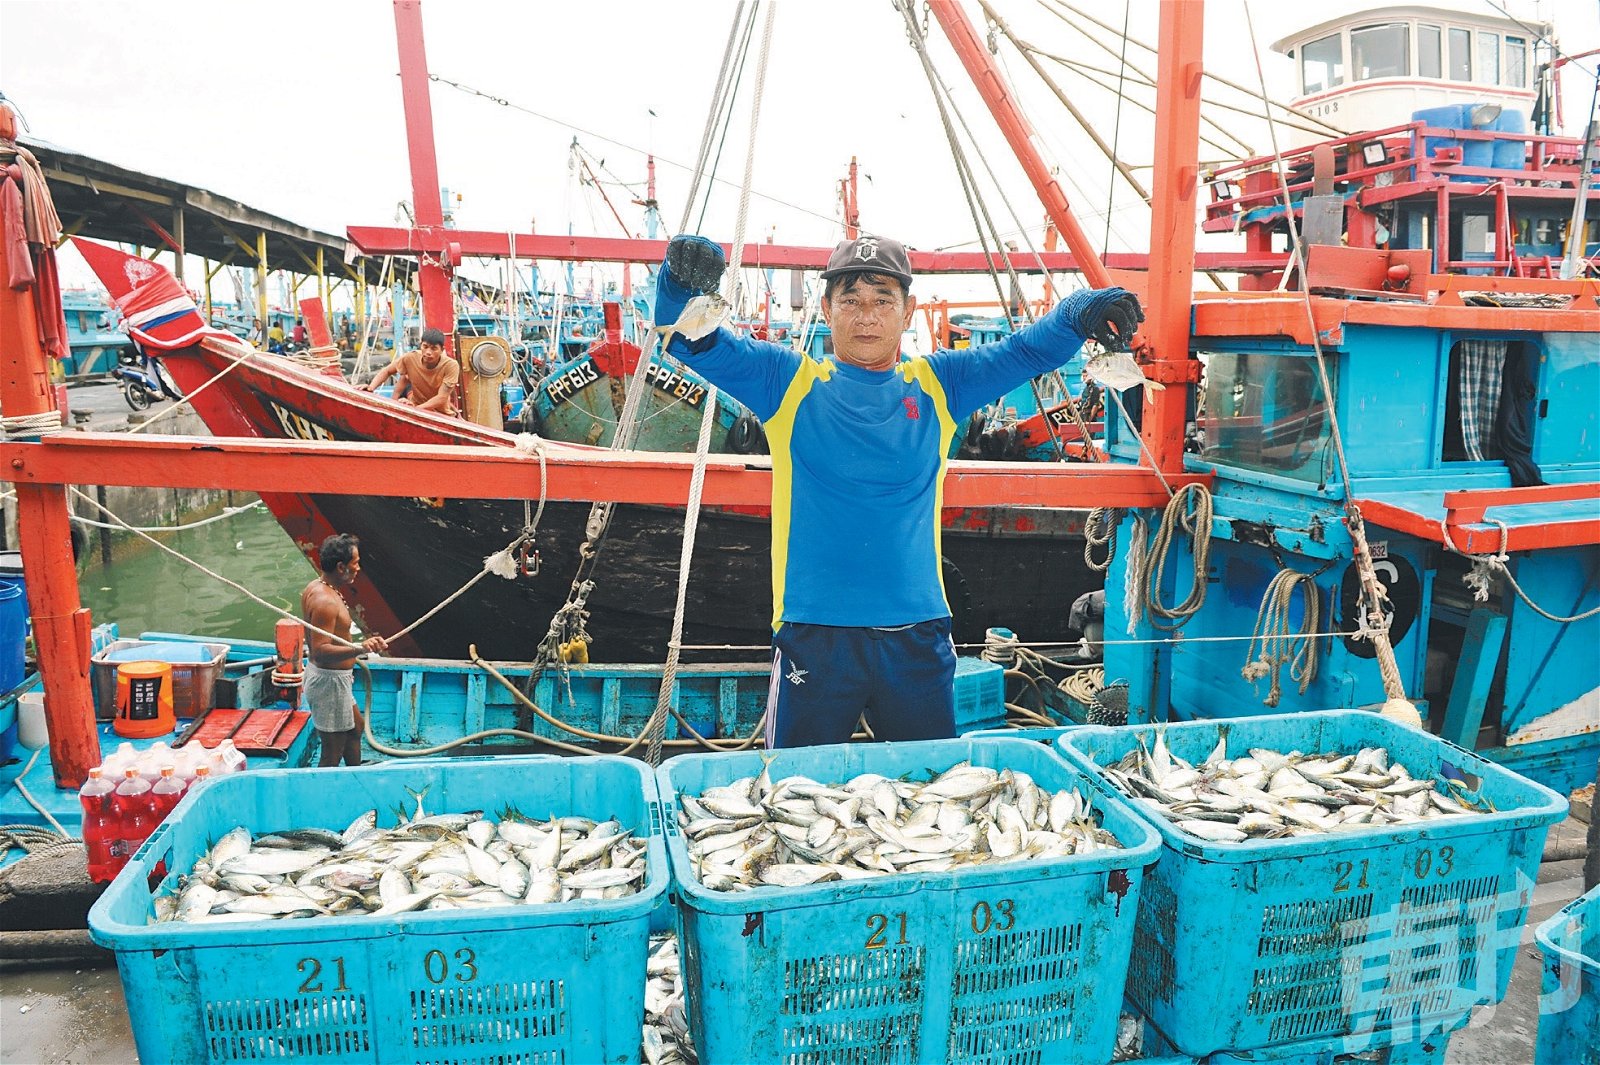 渔民的收入需依赖所捕获的渔量所决定，因此，许多年轻人对此行业不感兴趣。